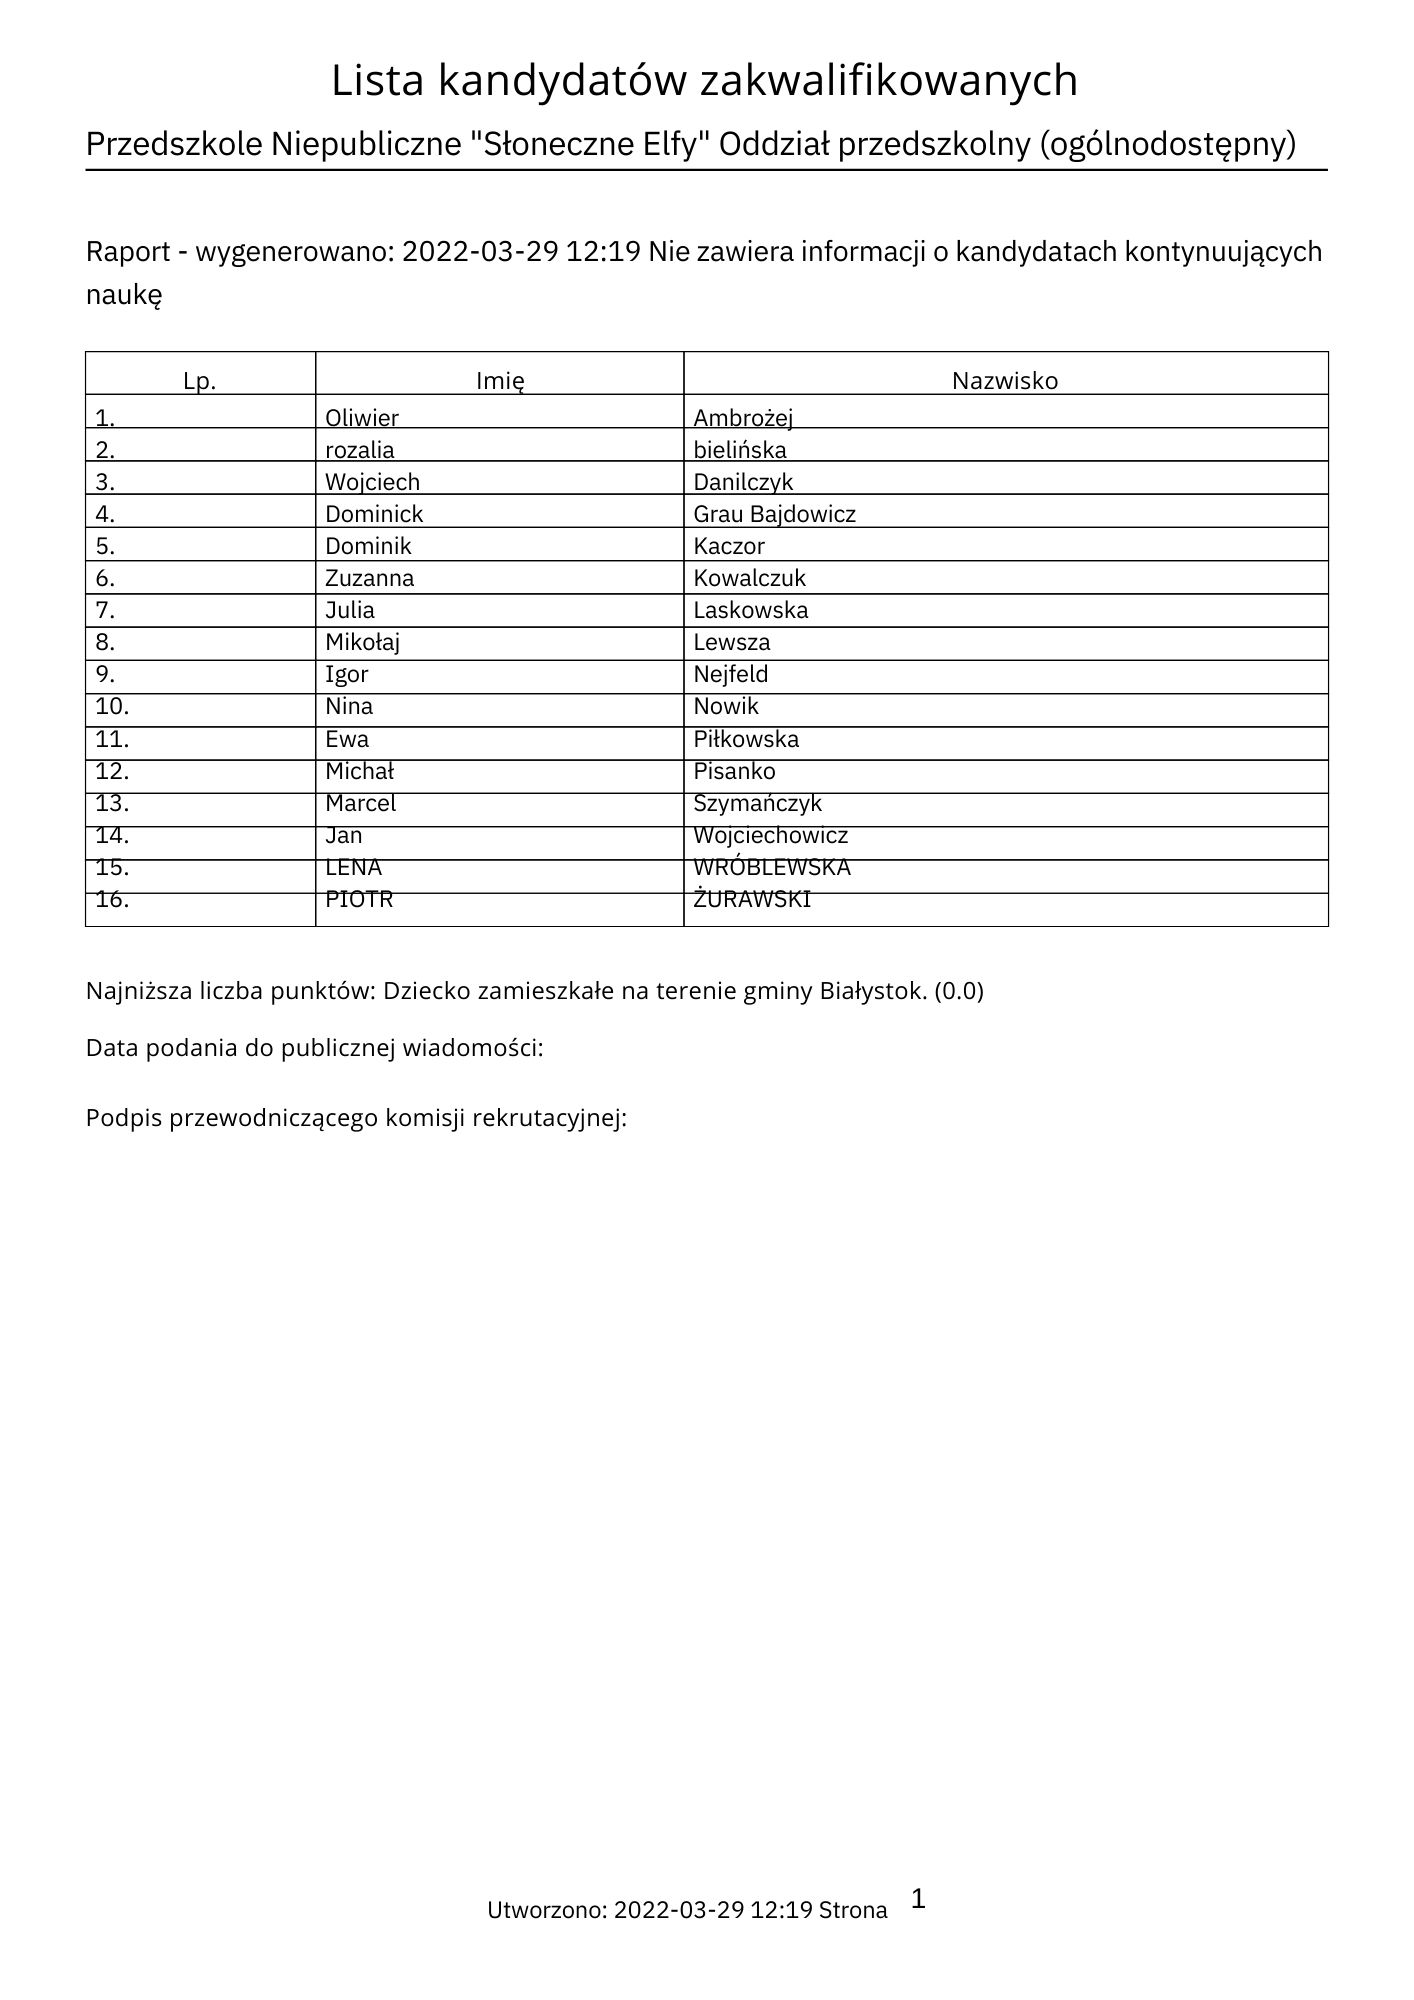 Lista_kandydatów_zakwalifikowanych-29-03-2022.pdf.jpg